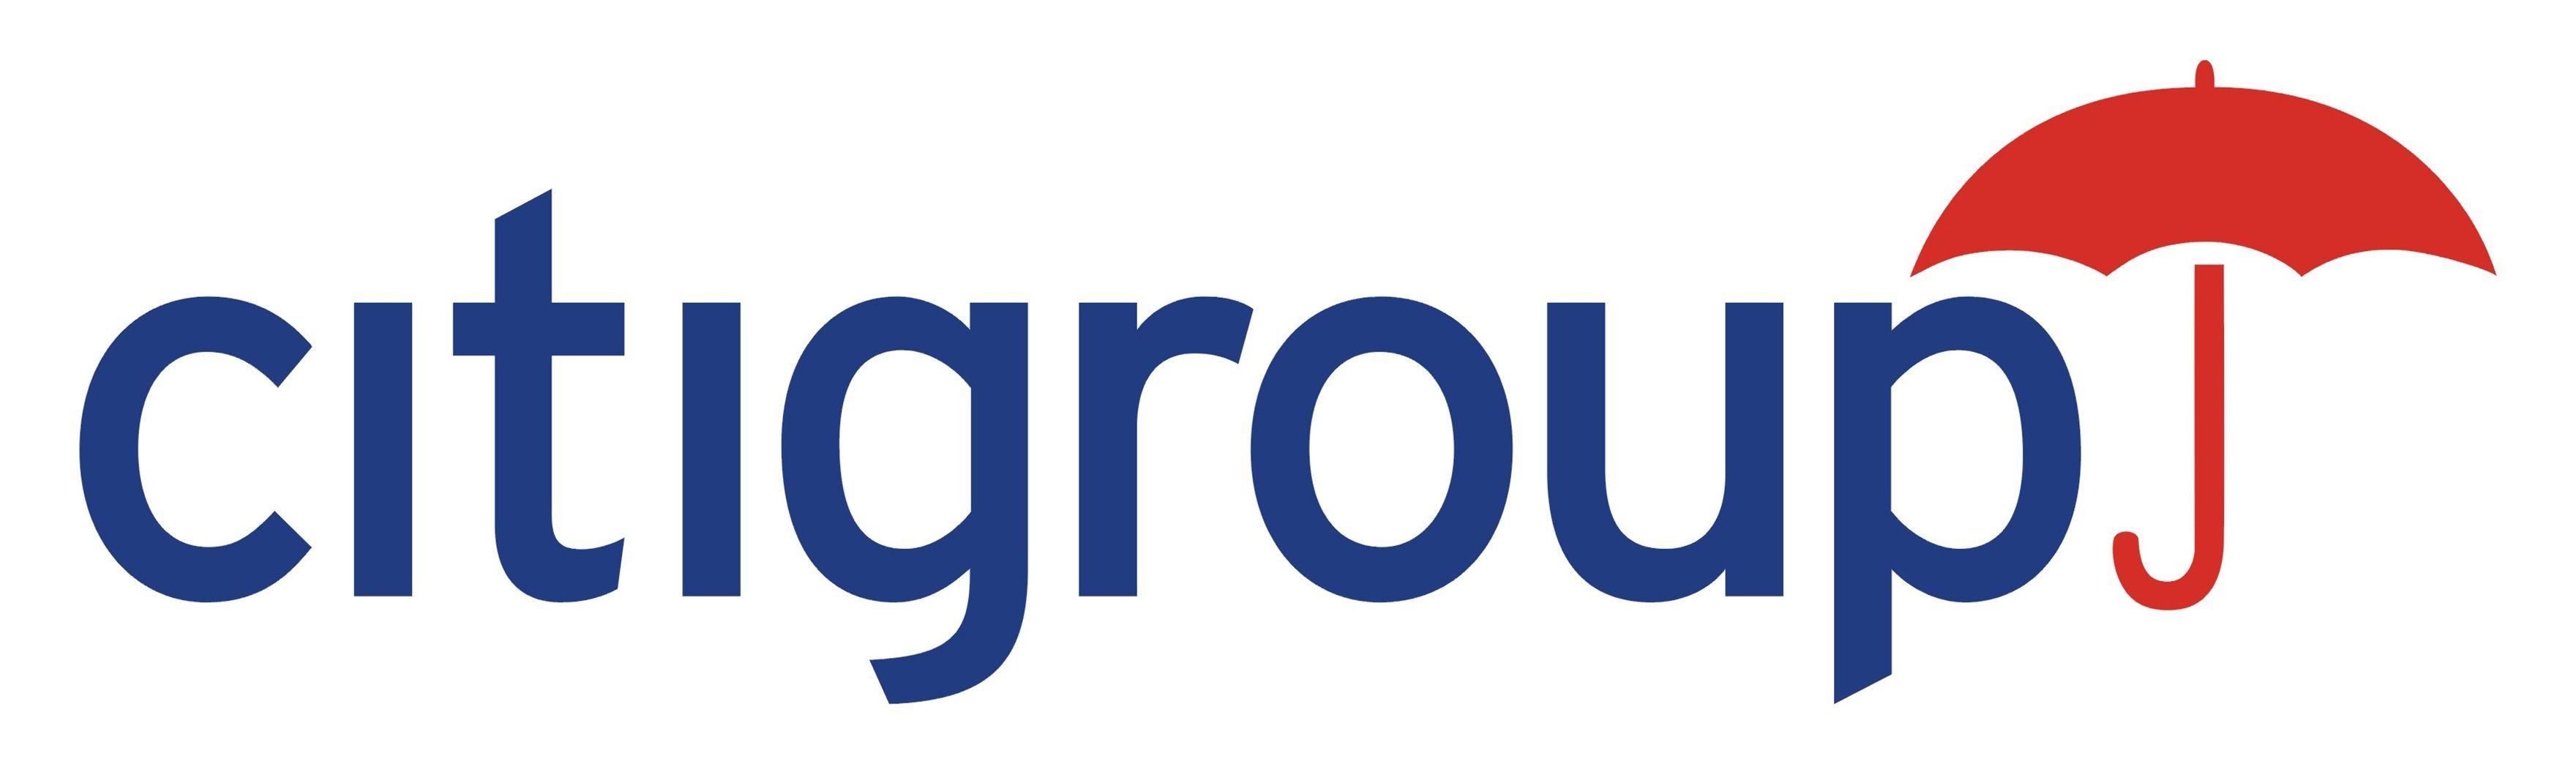 Citigroup Logo - Citigroup-logo | Goman+York